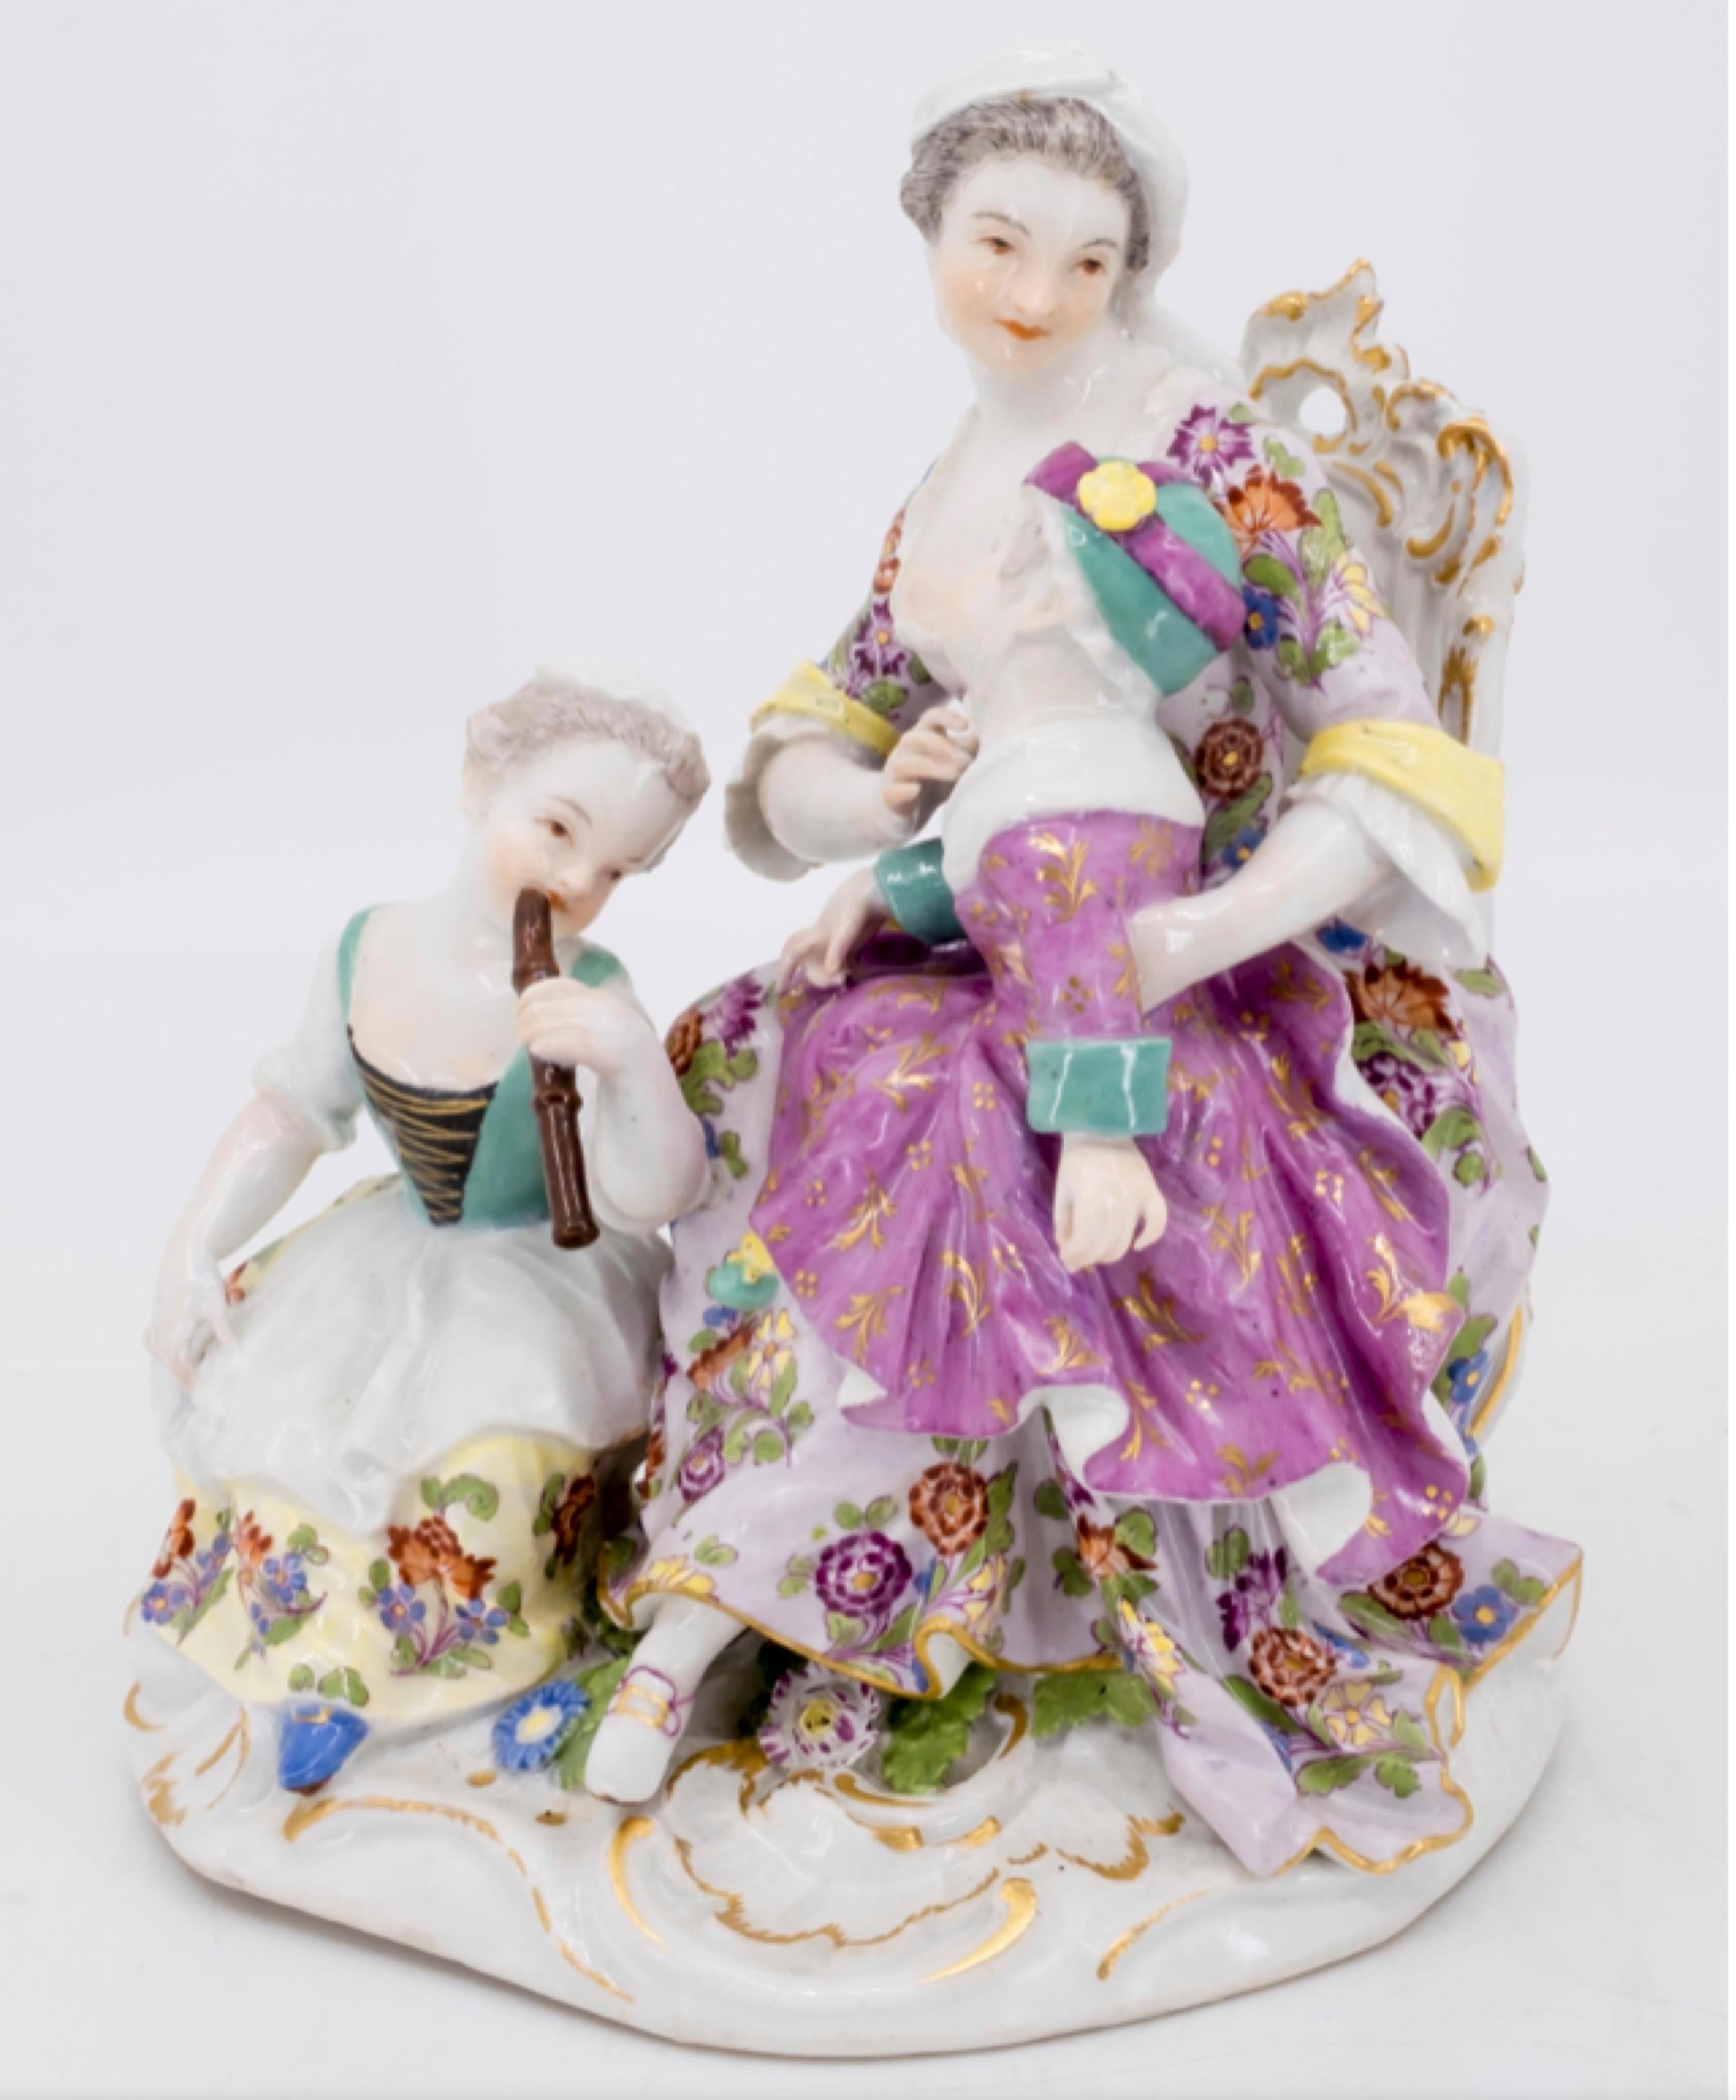 Une figurine représentant une mère et deux enfants, la fille jouant de la flûte
Allemand, Meissen, milieu du XVIIIe siècle, marqué pour Meissen,
porcelaine, Allemagne, avec épées doubles croisées en bleu sous glaçure




